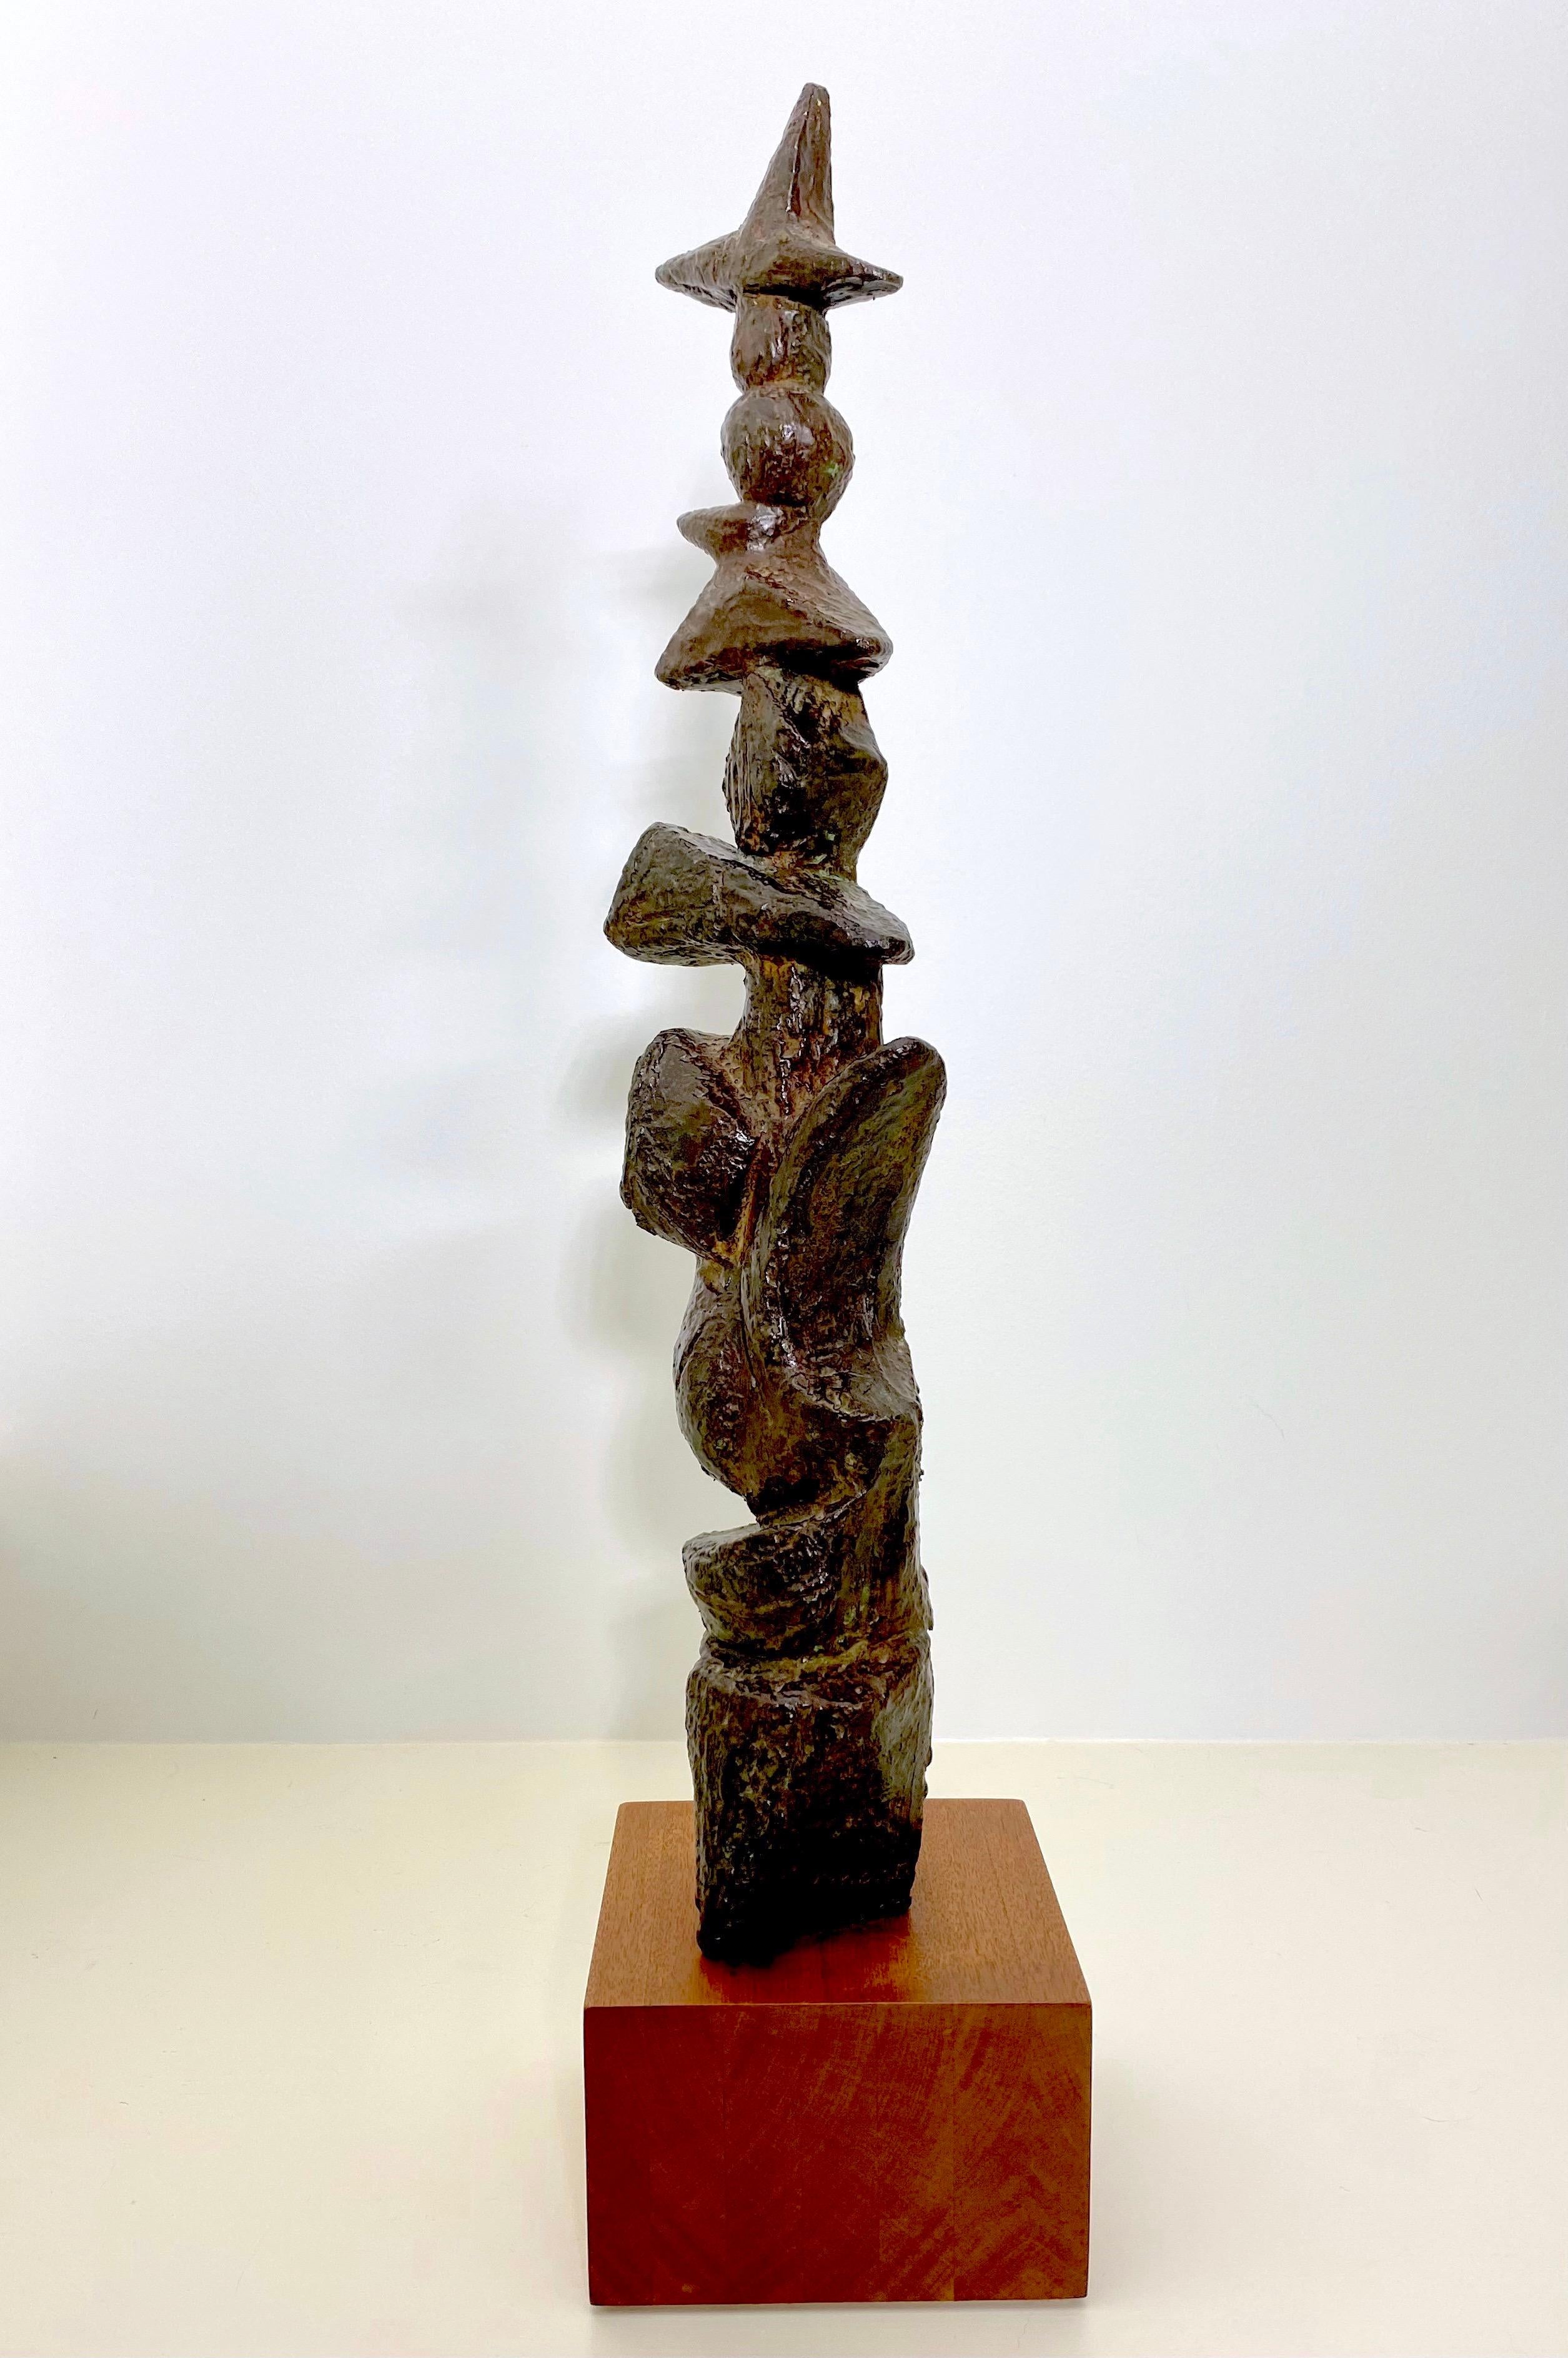 Superbe sculpture abstraite en bronze patiné attribuée à Marcel Marti (1925-2010), unique sous tous les angles. Il s'agit d'une œuvre d'art d'après-guerre saisissante des années 50, en bronze foncé, avec des lignes gravées dans différentes sections